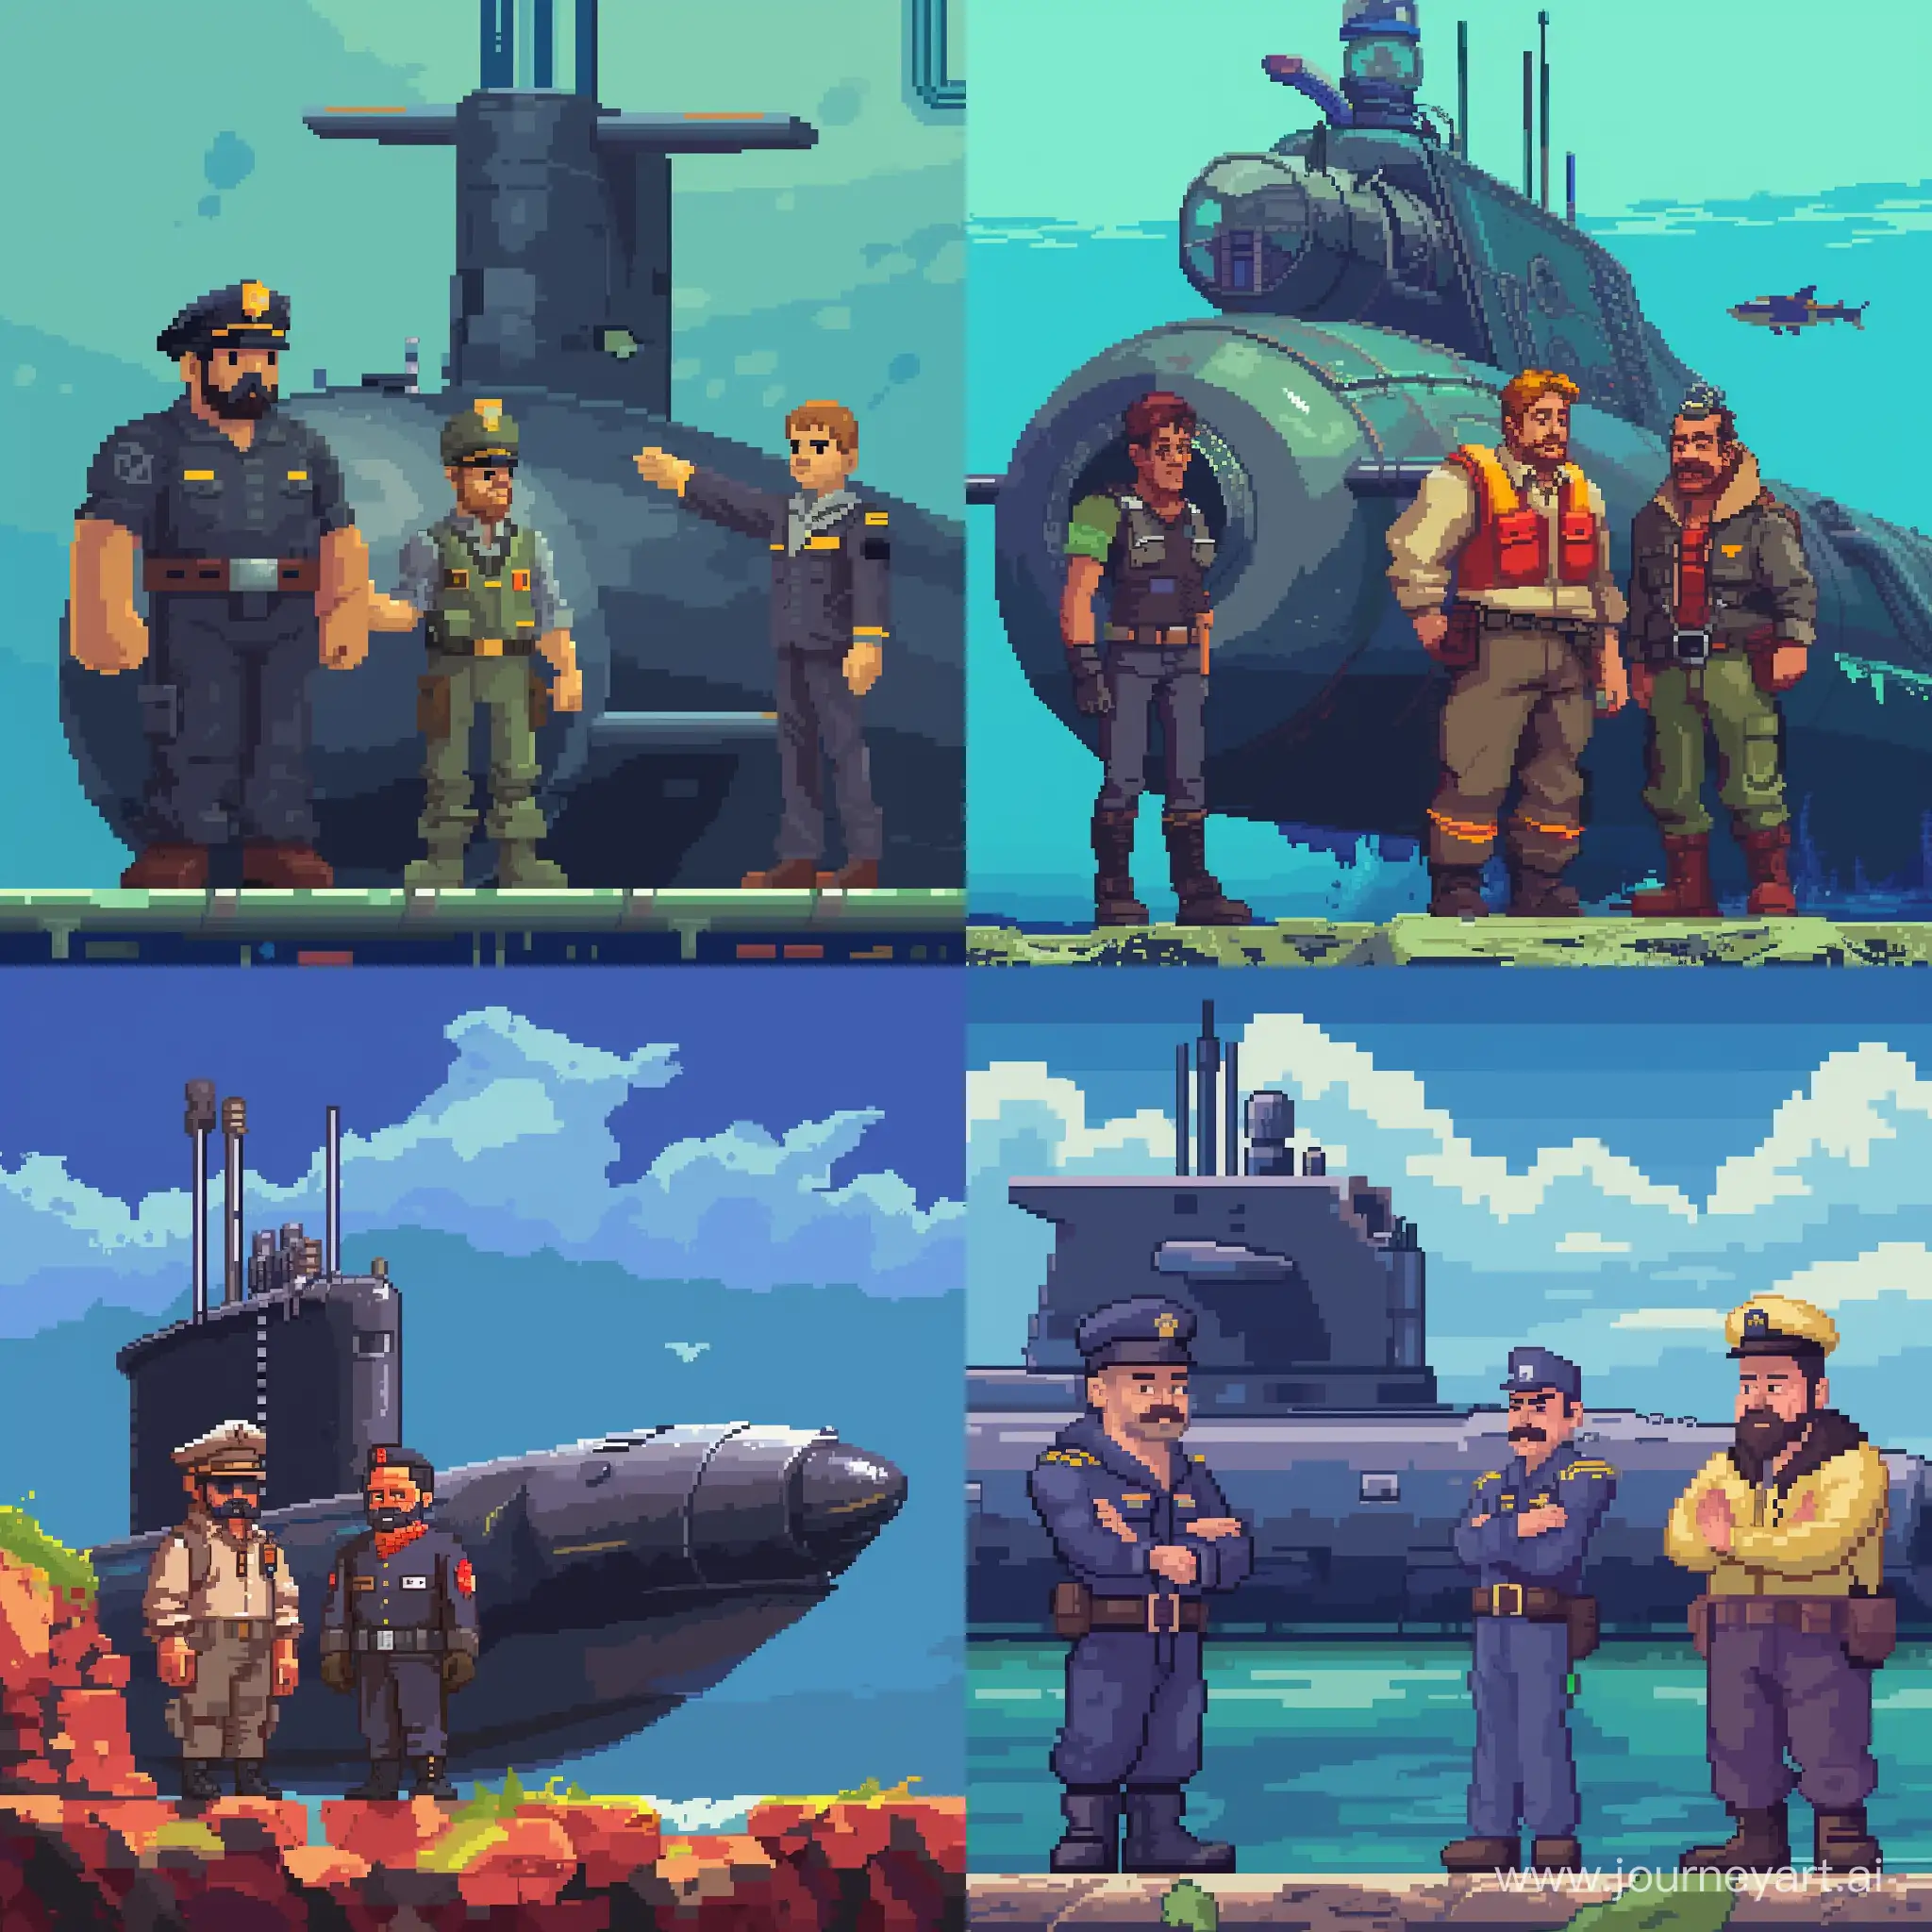 Инженер и капитан и охранник из игры Barotrauma, стоят рядом с подводной лодкой, пиксельный стиль